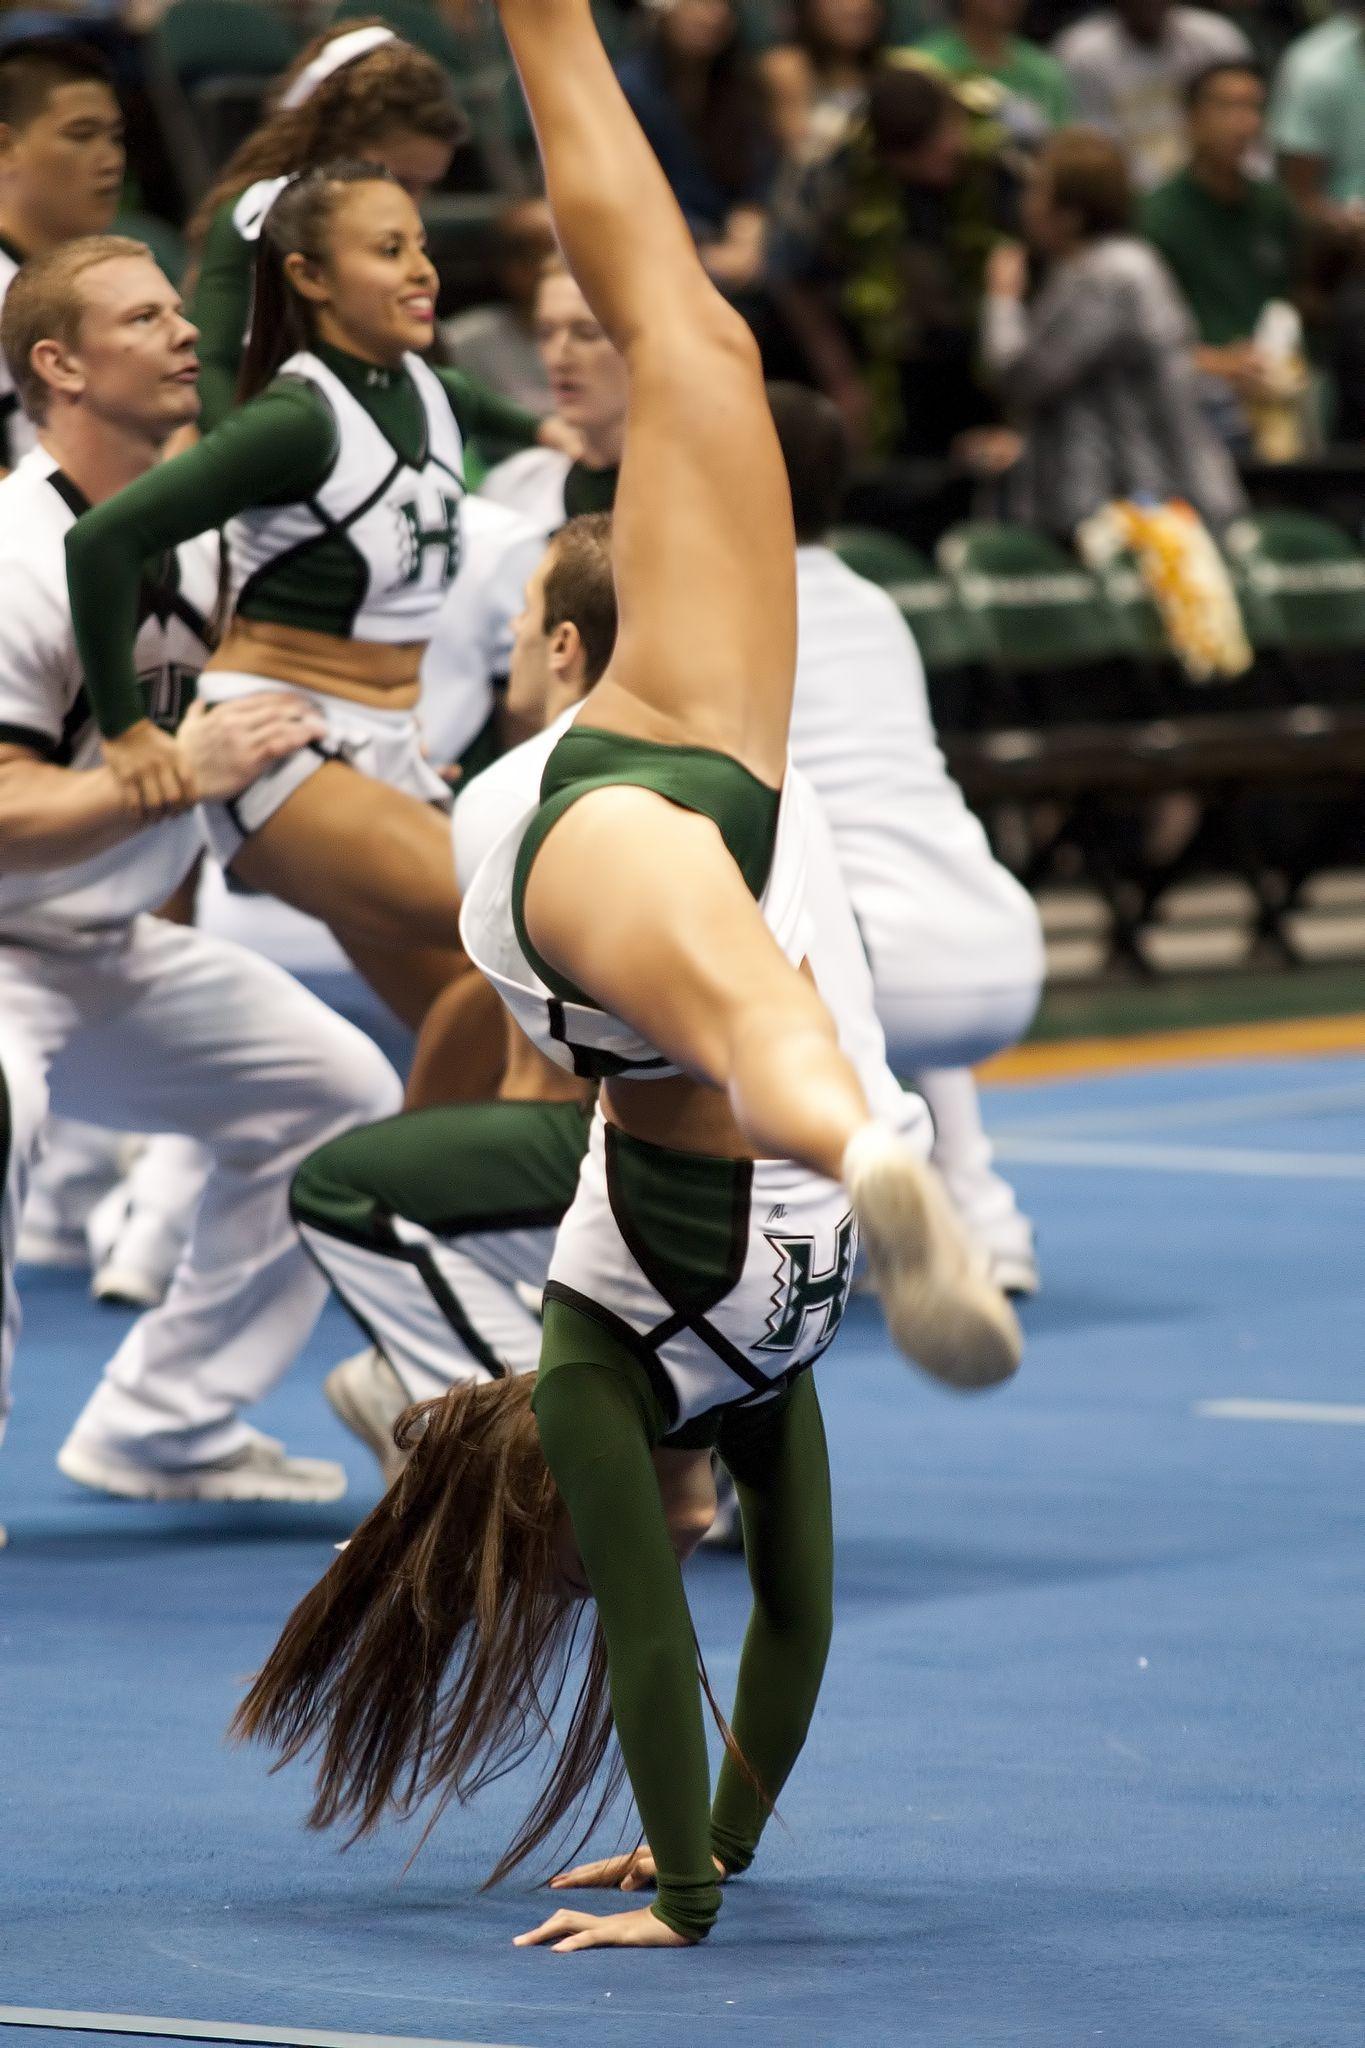 Nba cheerleader upskirt  photo